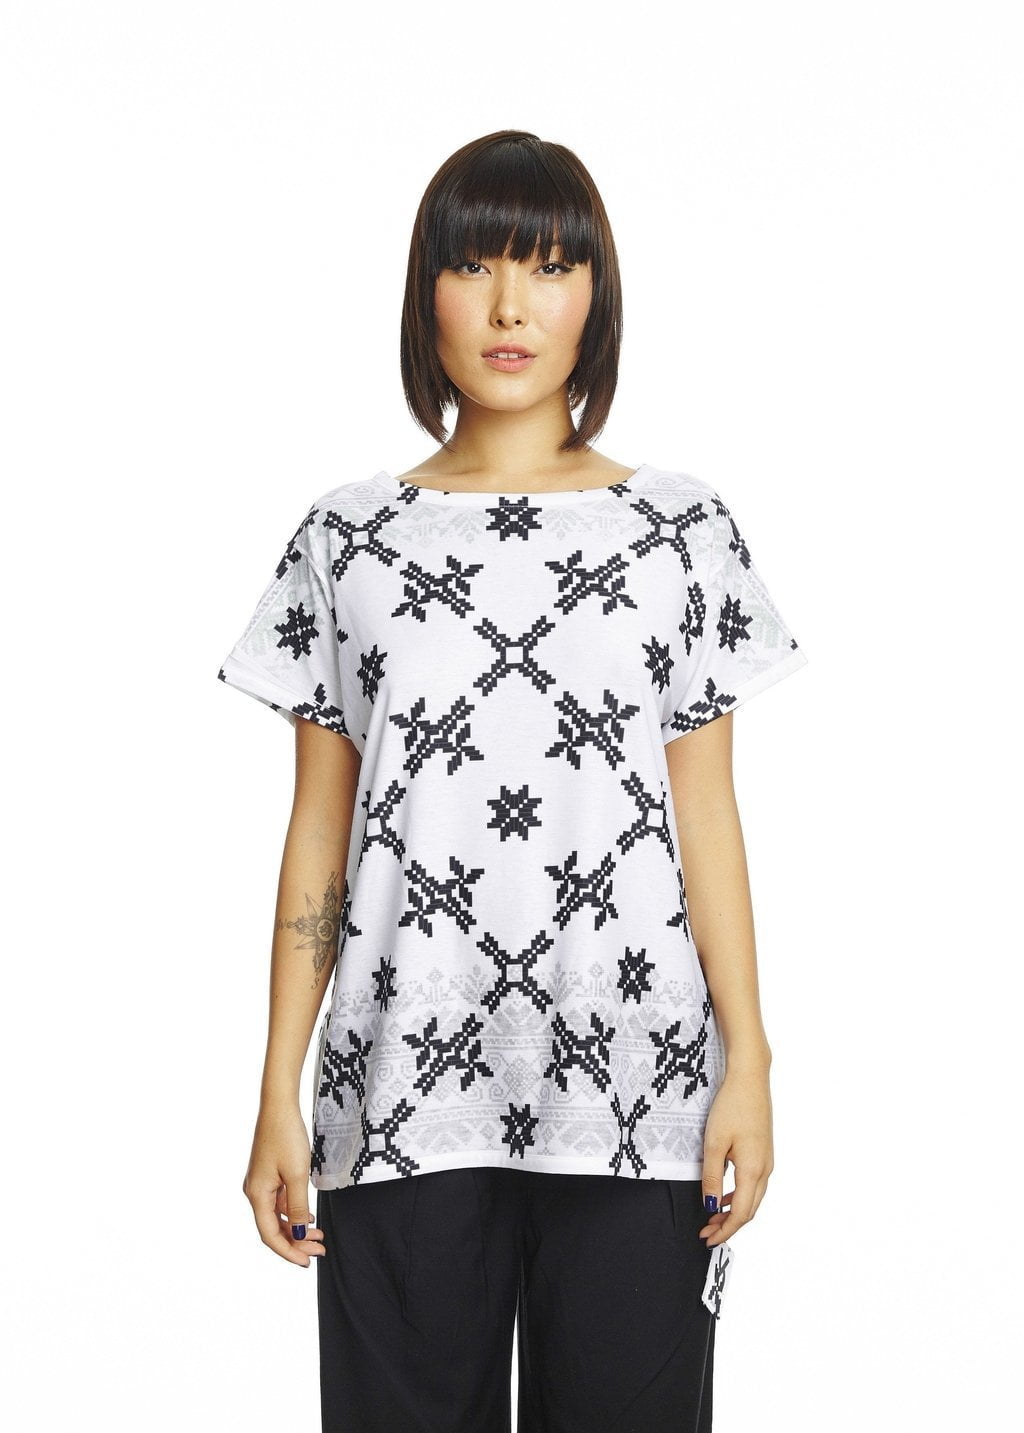 Le Danse - Uztzu Clothing - Shop Super 4 in 1 T-shirts, Pants and hoodies online!